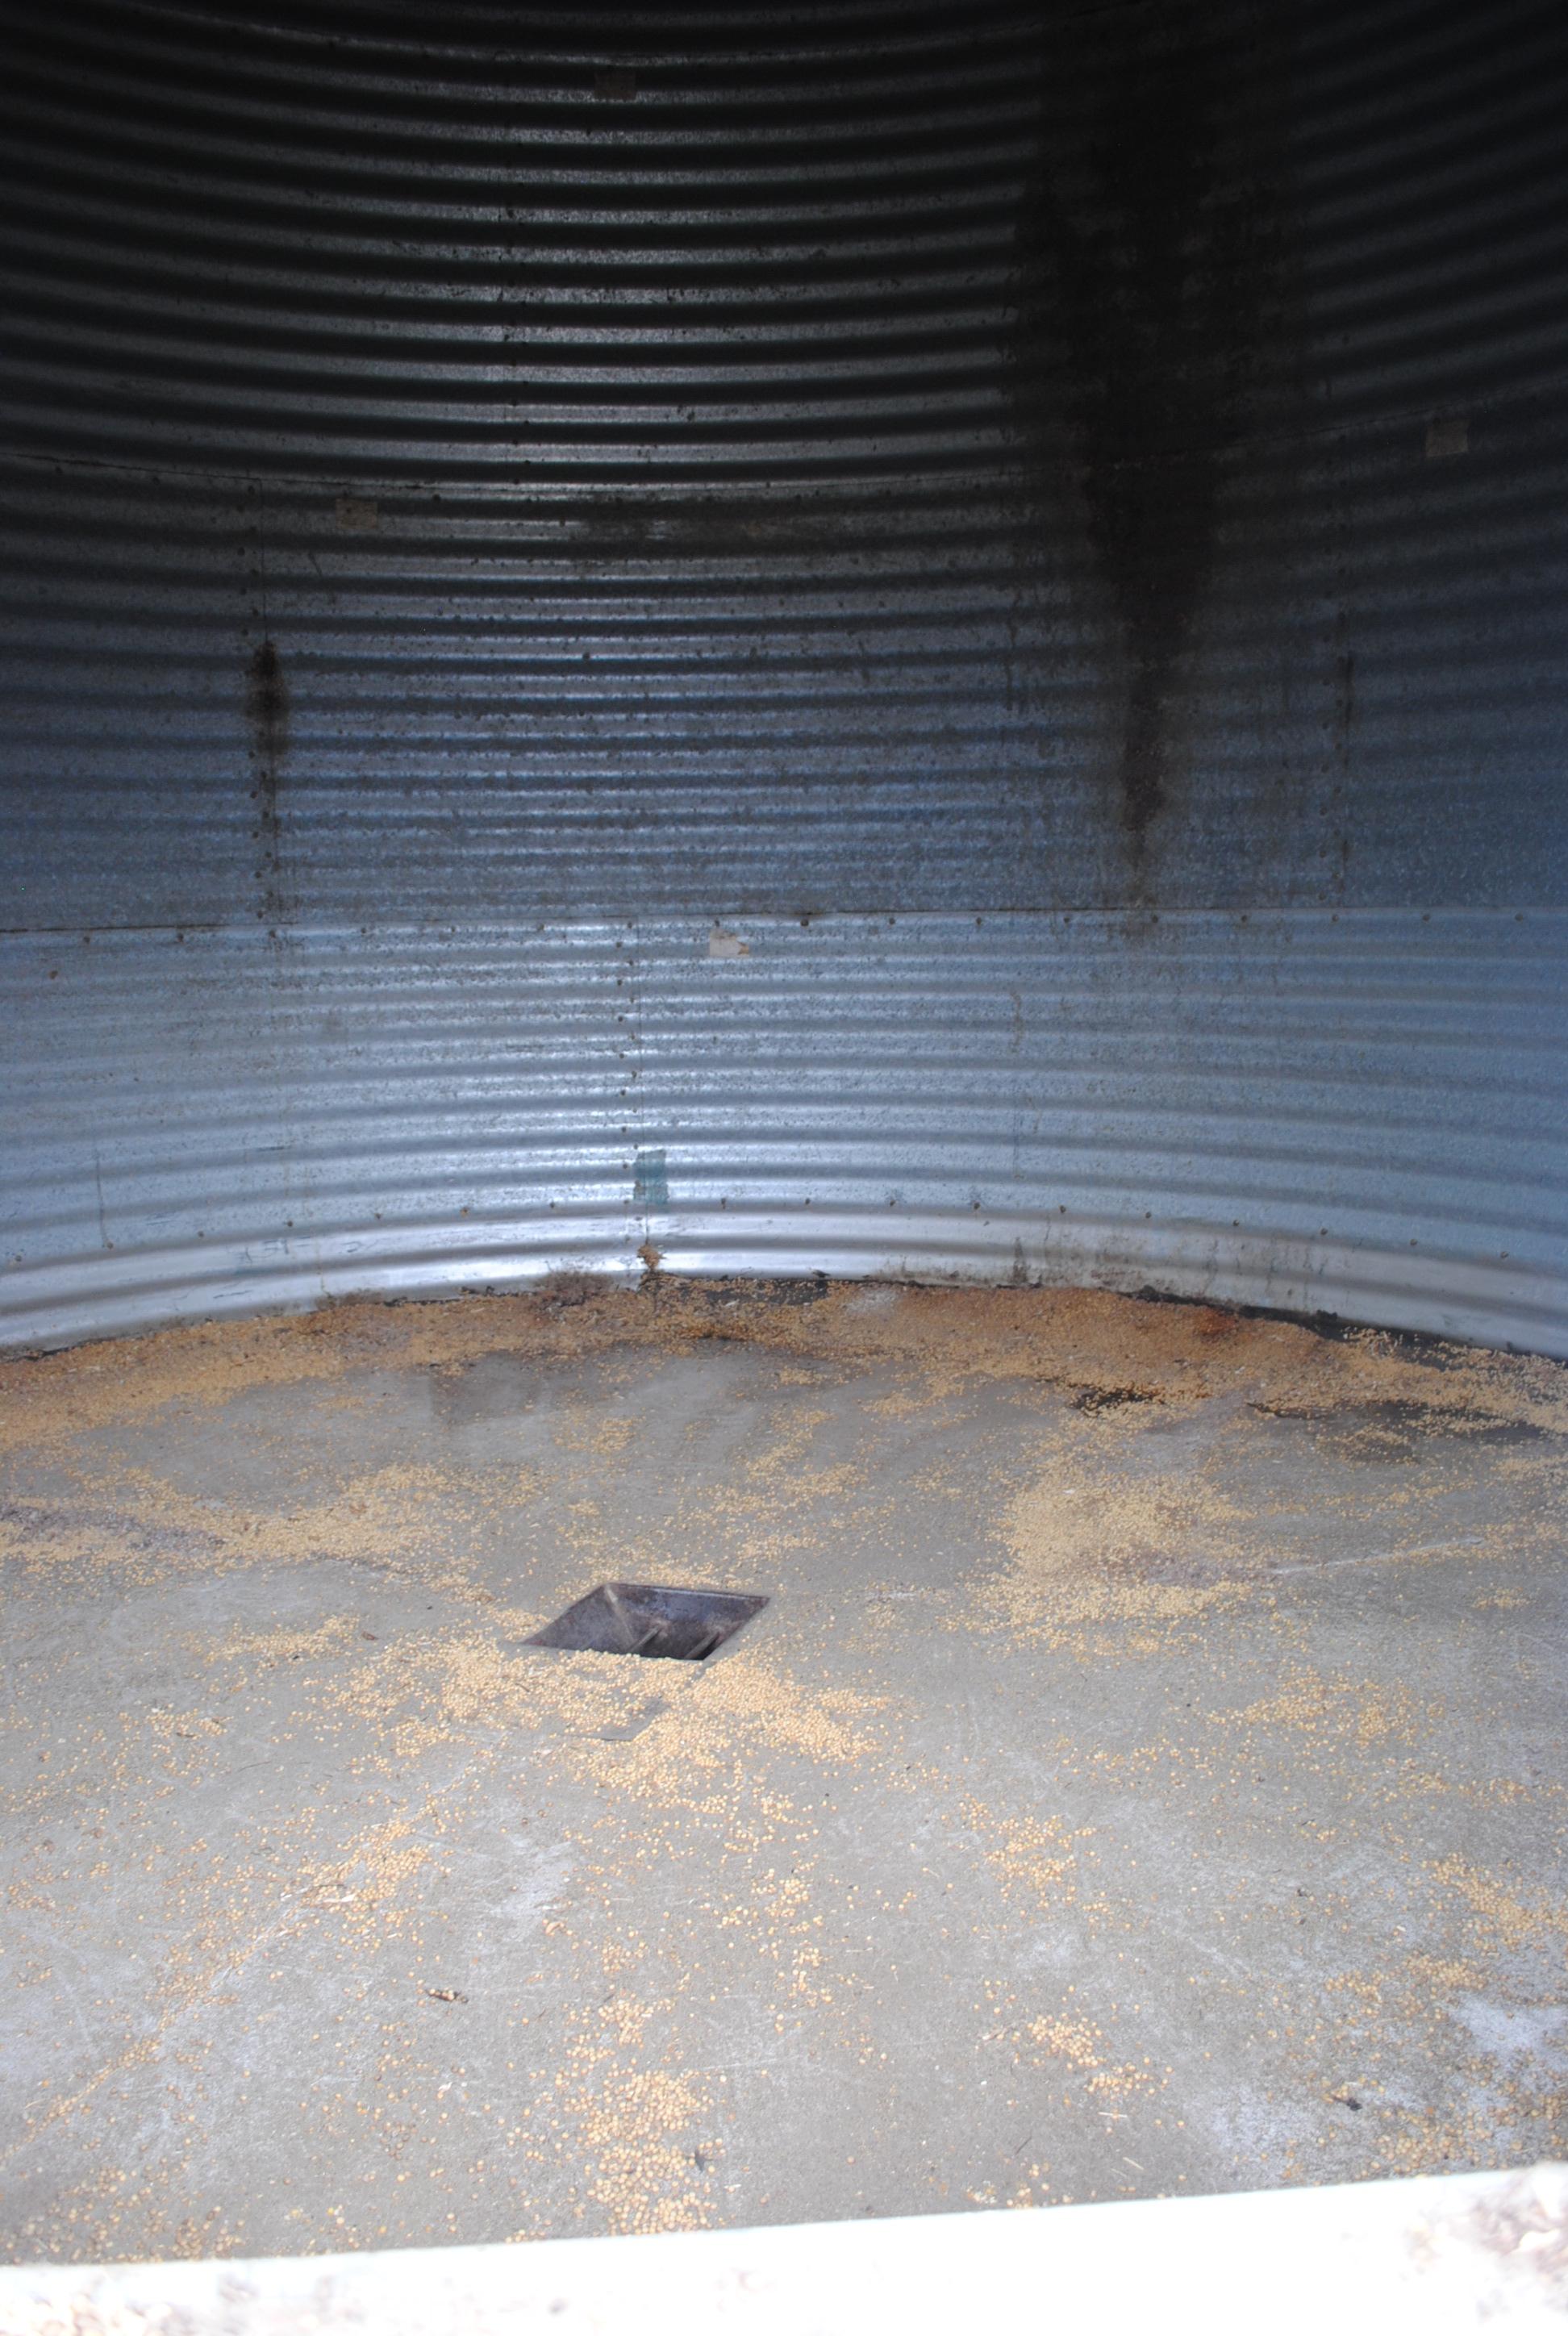 Butler 16' Grain Bin, 4-ring, unload auger in concrete